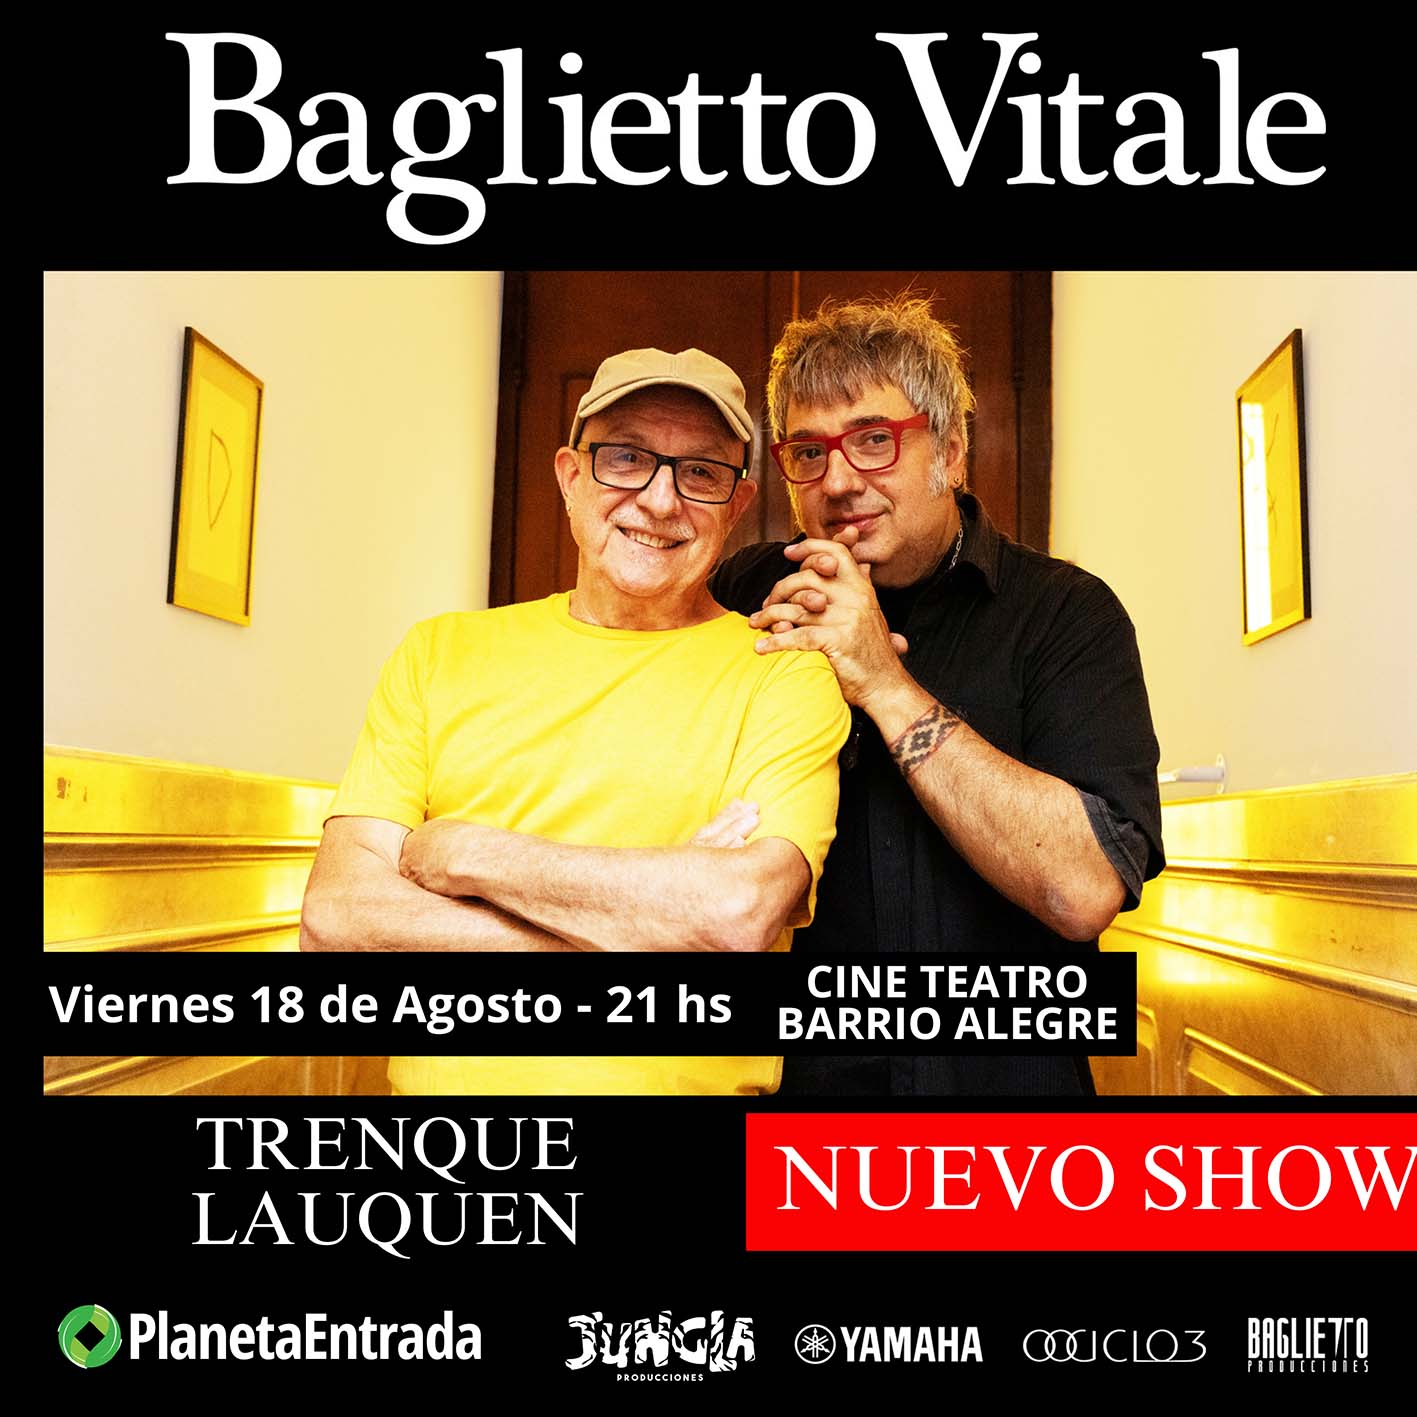 BAGLIETTO & VITALE | 18 AGOSTO | TRENQUE LAUQUEN